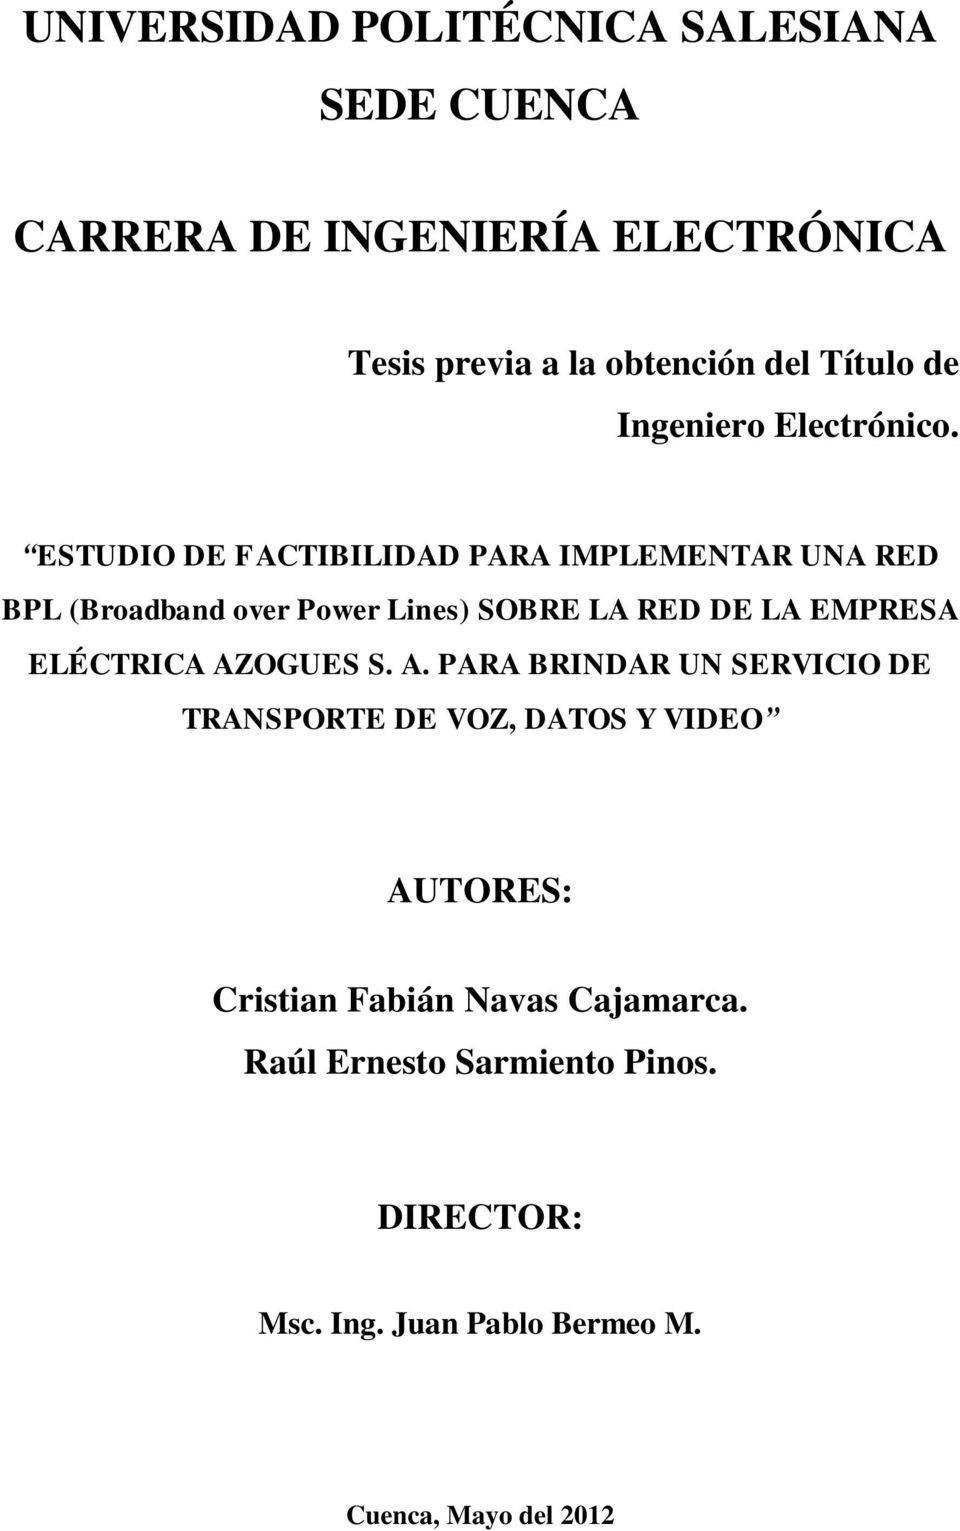 ESTUDIO DE FACTIBILIDAD PARA IMPLEMENTAR UNA RED BPL (Broadband over Power Lines) SOBRE LA RED DE LA EMPRESA ELÉCTRICA